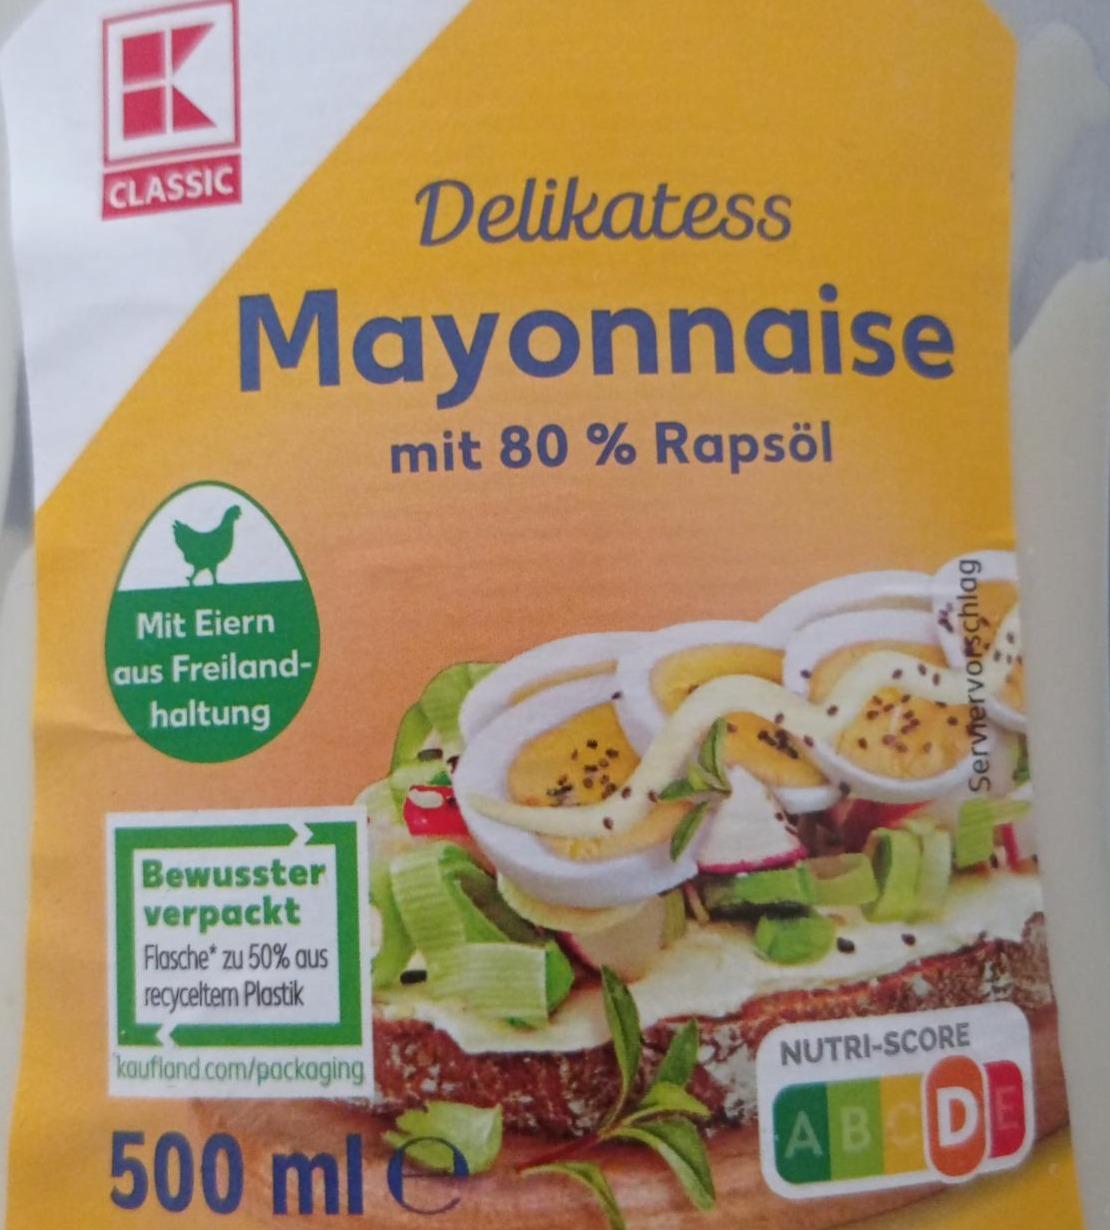 Фото - Delikatess mayonnaise mit 80% rapsöl K-Classic